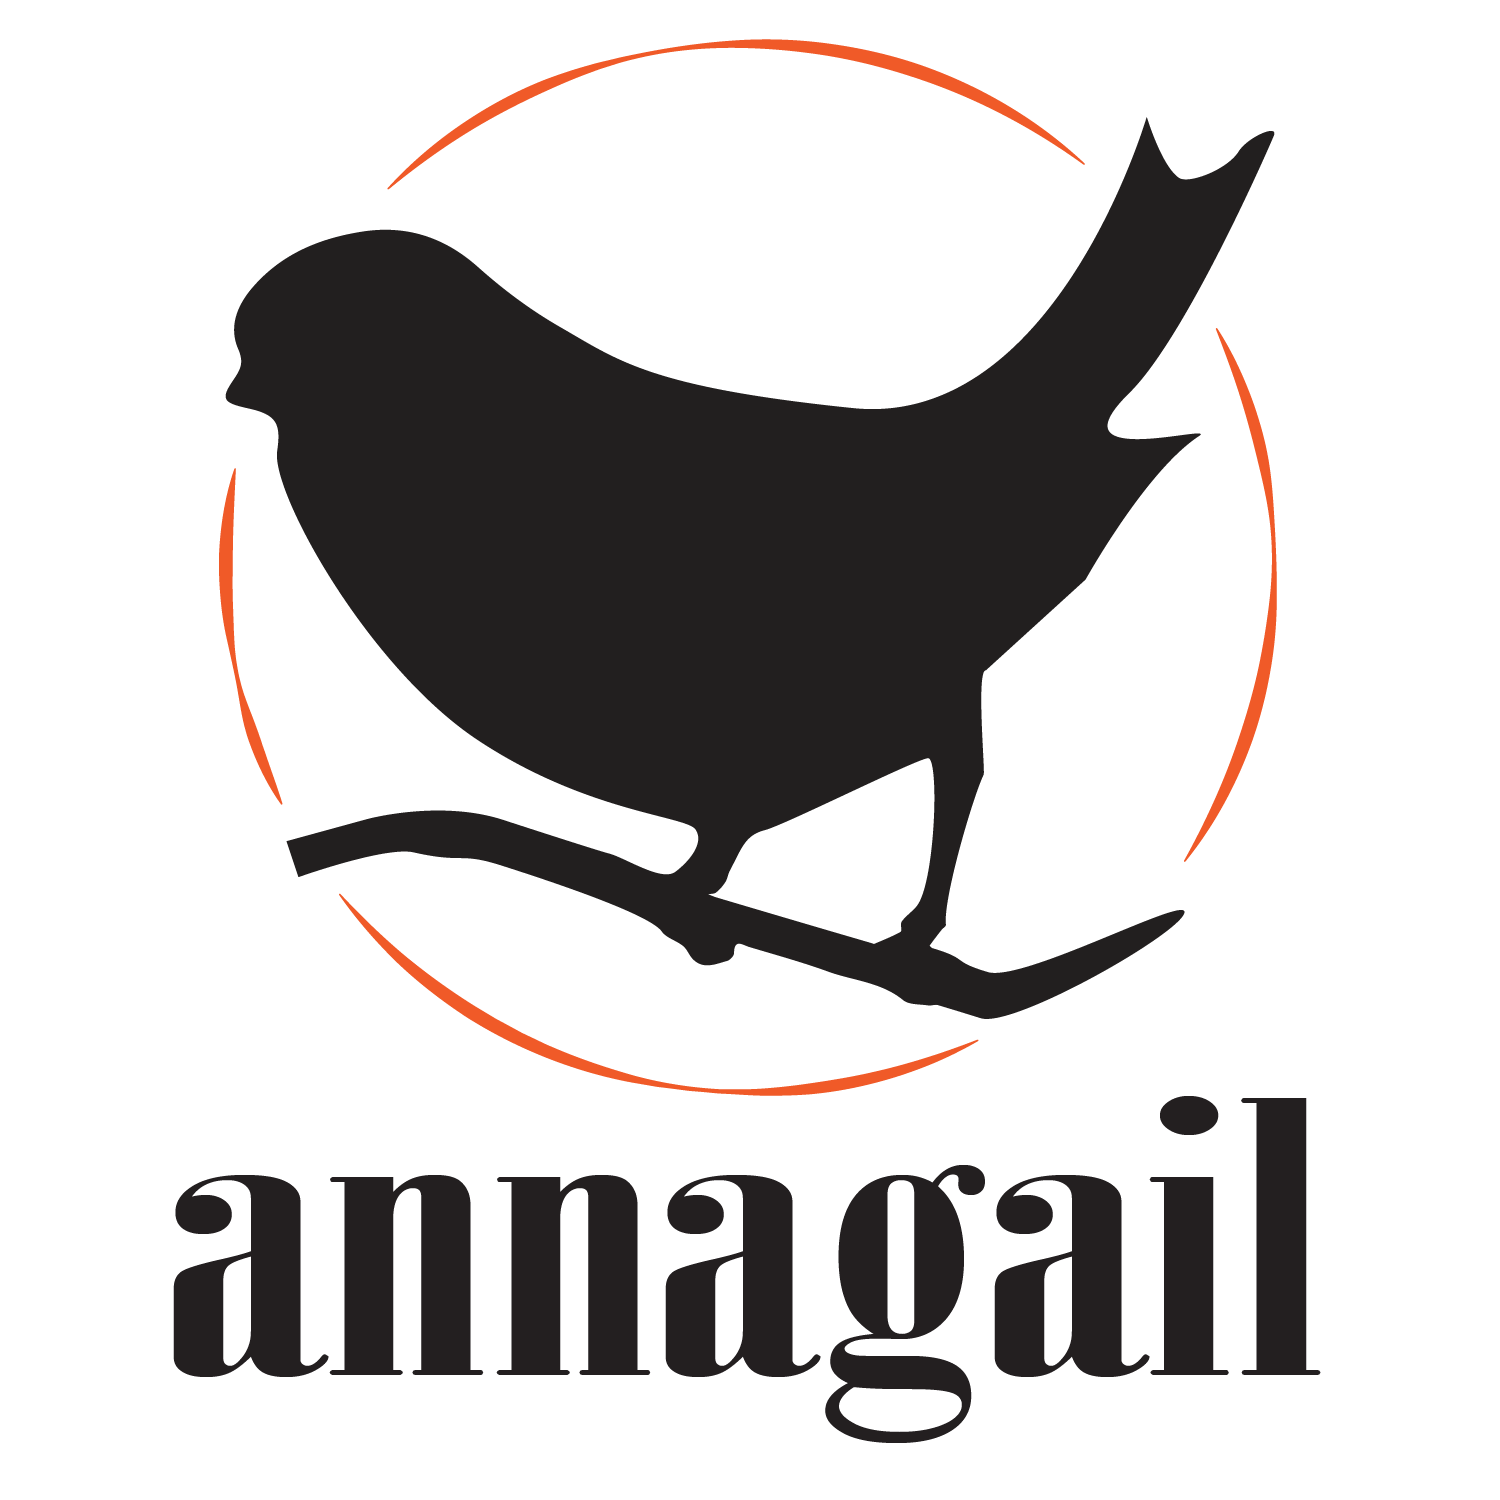 Annagail // Official Site